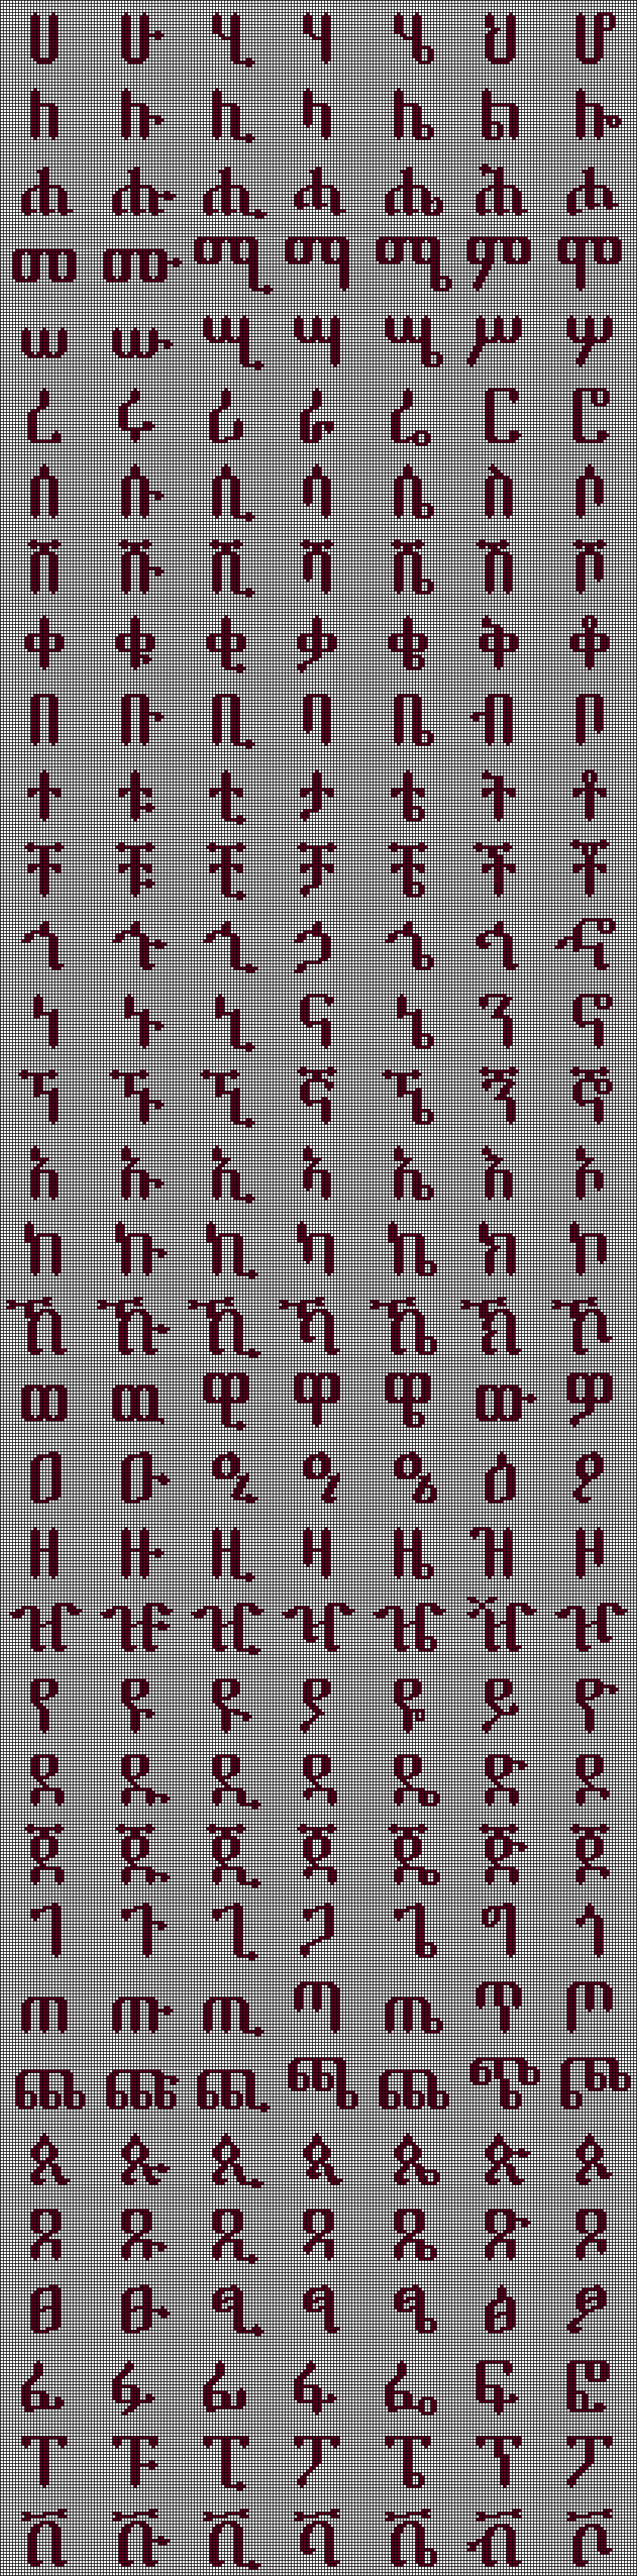 alphabet - full array